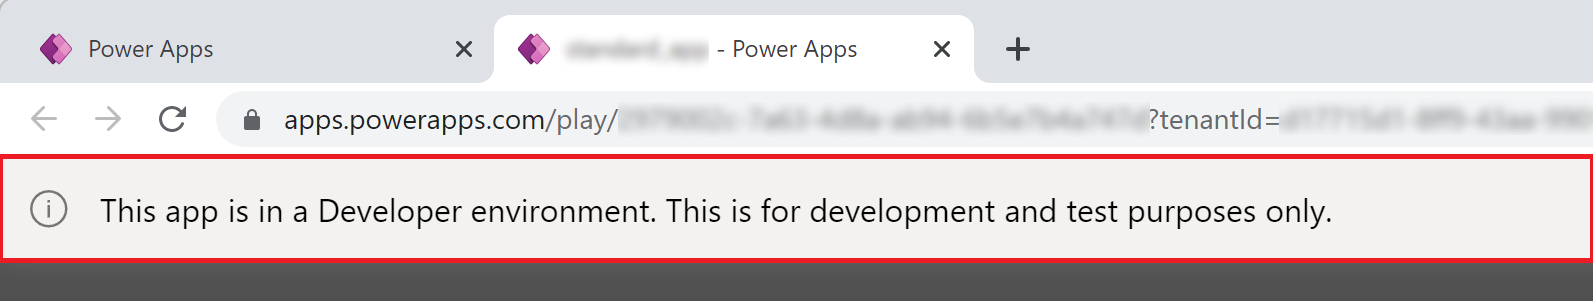 Power Apps Developer Environment app banner.